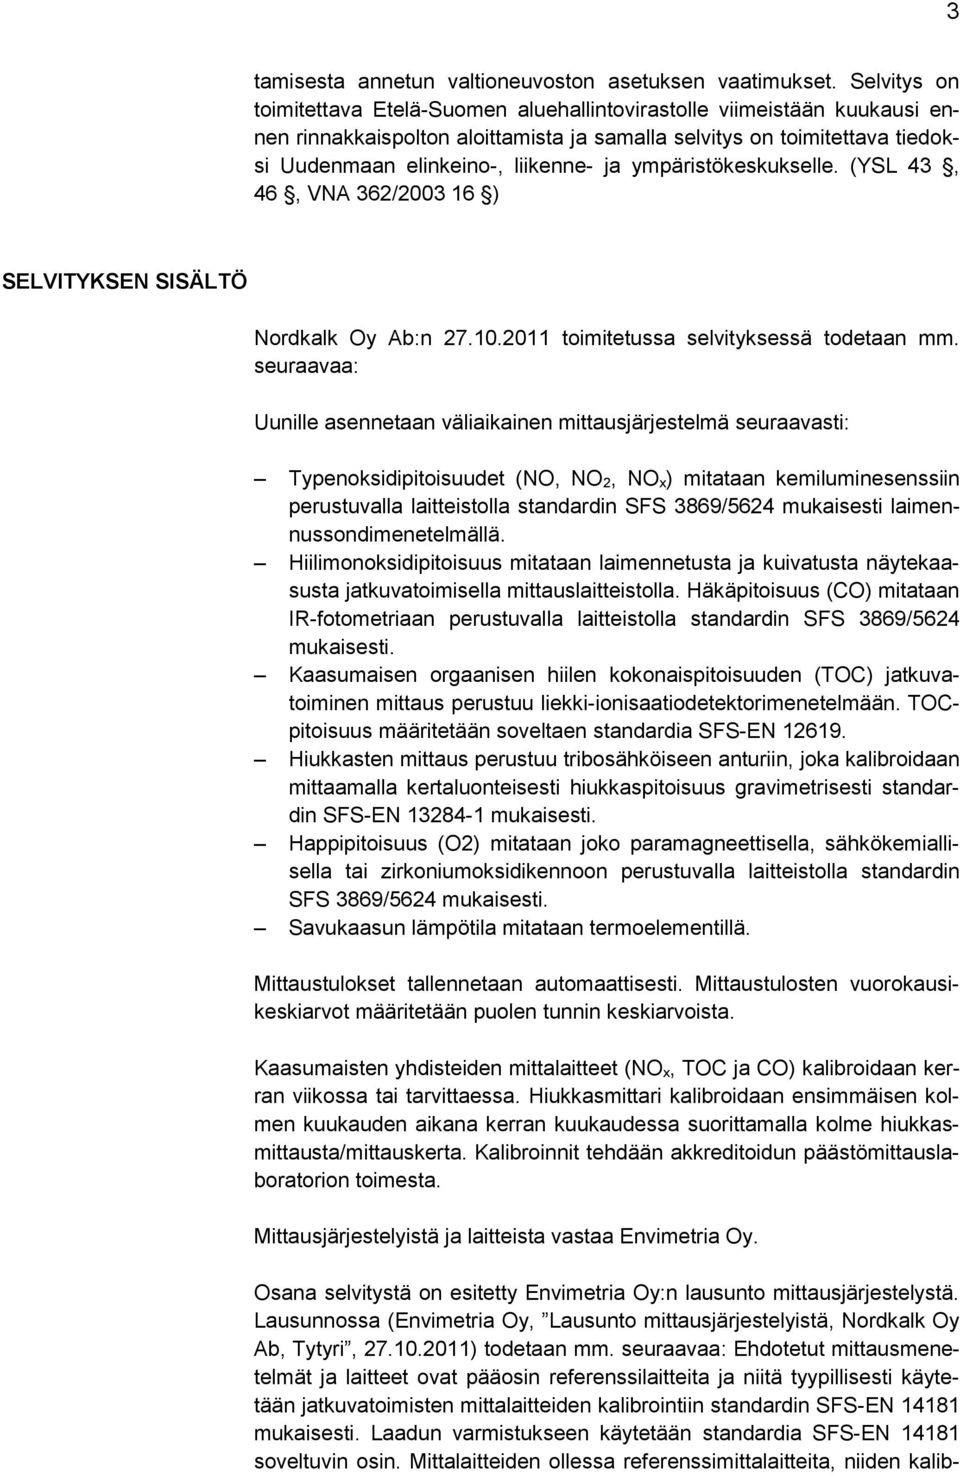 ympäristökeskukselle. (YSL 43, 46, VNA 362/2003 16 ) SELVITYKSEN SISÄLTÖ Nordkalk Oy Ab:n 27.10.2011 toimitetussa selvityksessä todetaan mm.